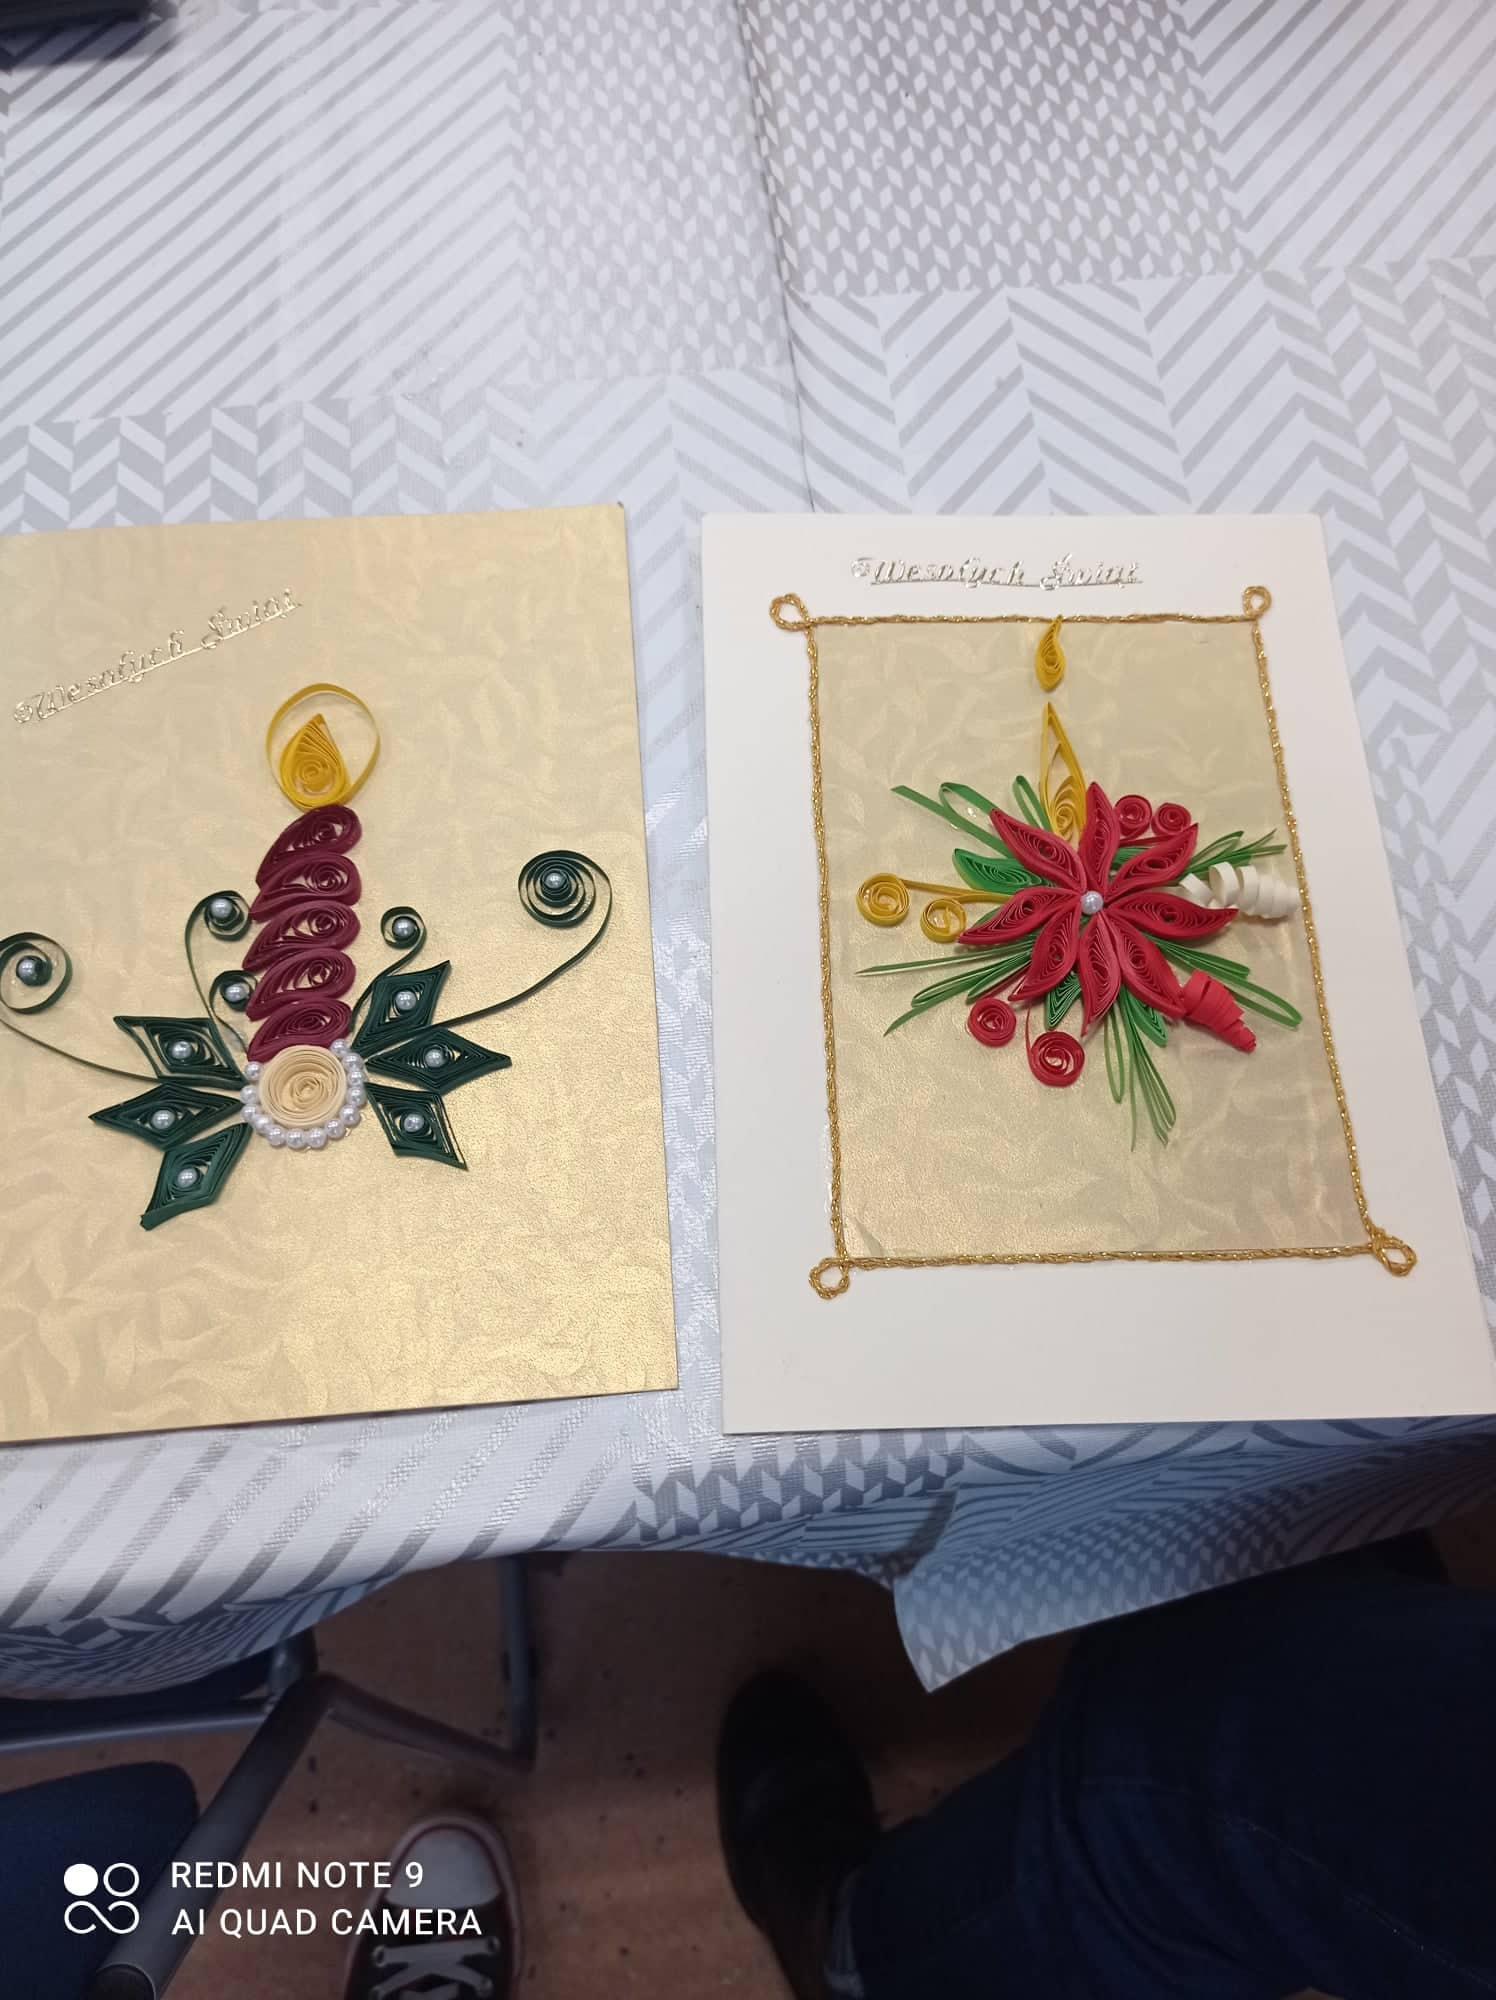 Kartki świąteczne własnoręcznie wykonane przez uczestników Klubu seniora